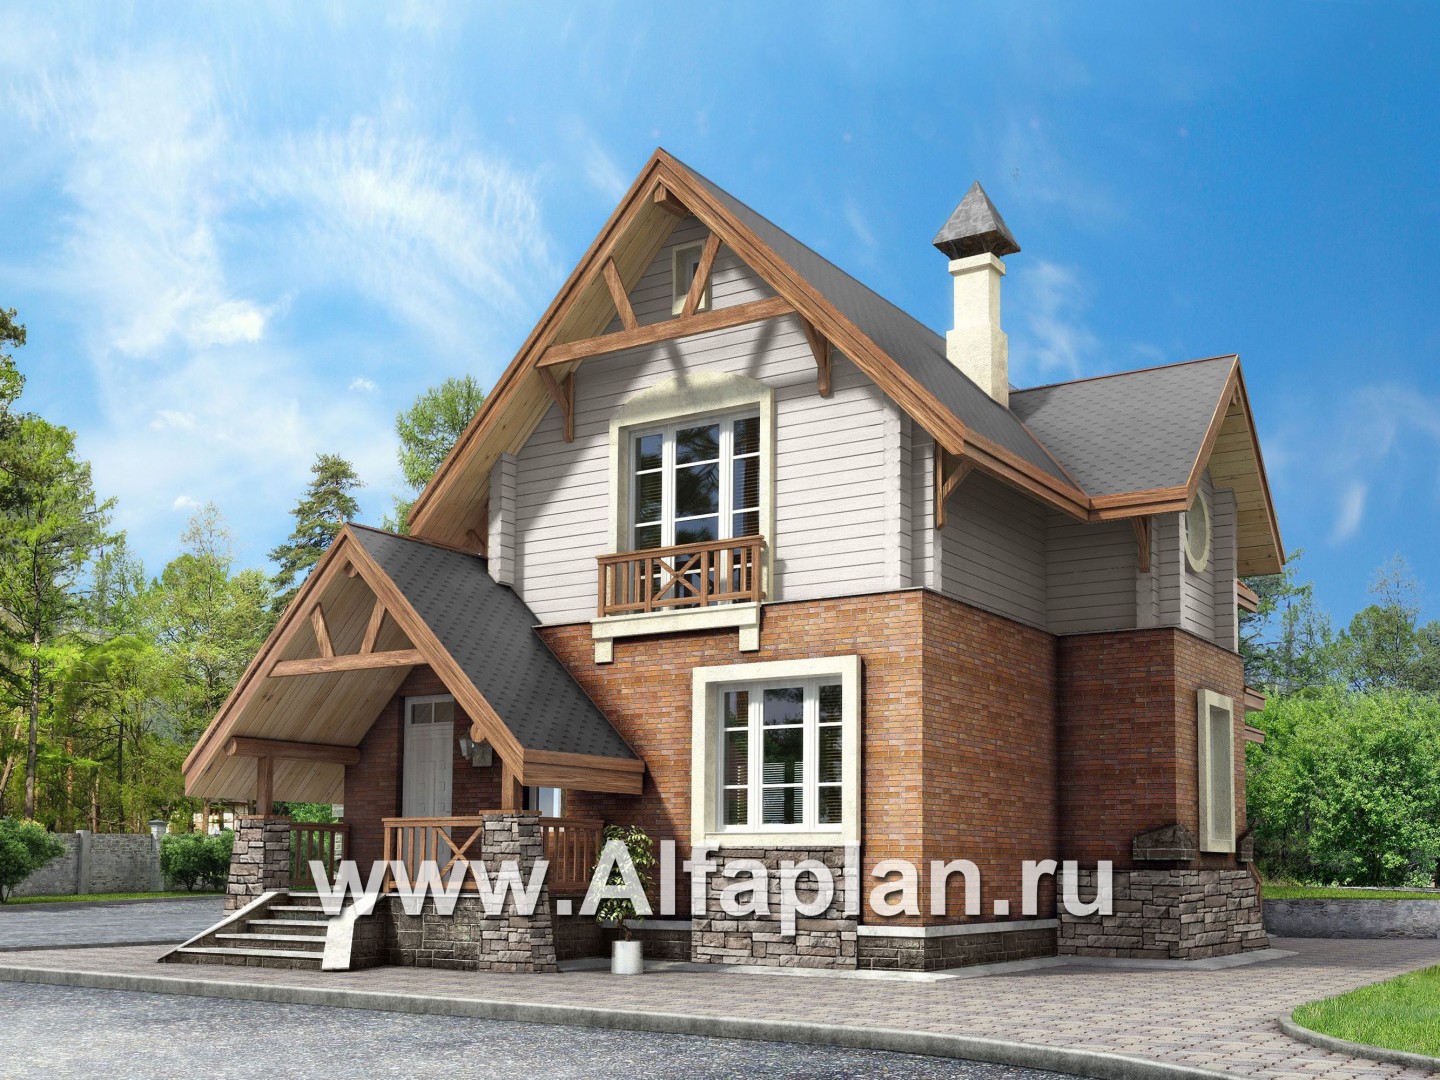 «Альпенхаус»- проект дома с мансардой, высокий потолок в гостиной, в стиле  шале, 1 эт из кирпича, 2 эт из бруса - дизайн дома №1